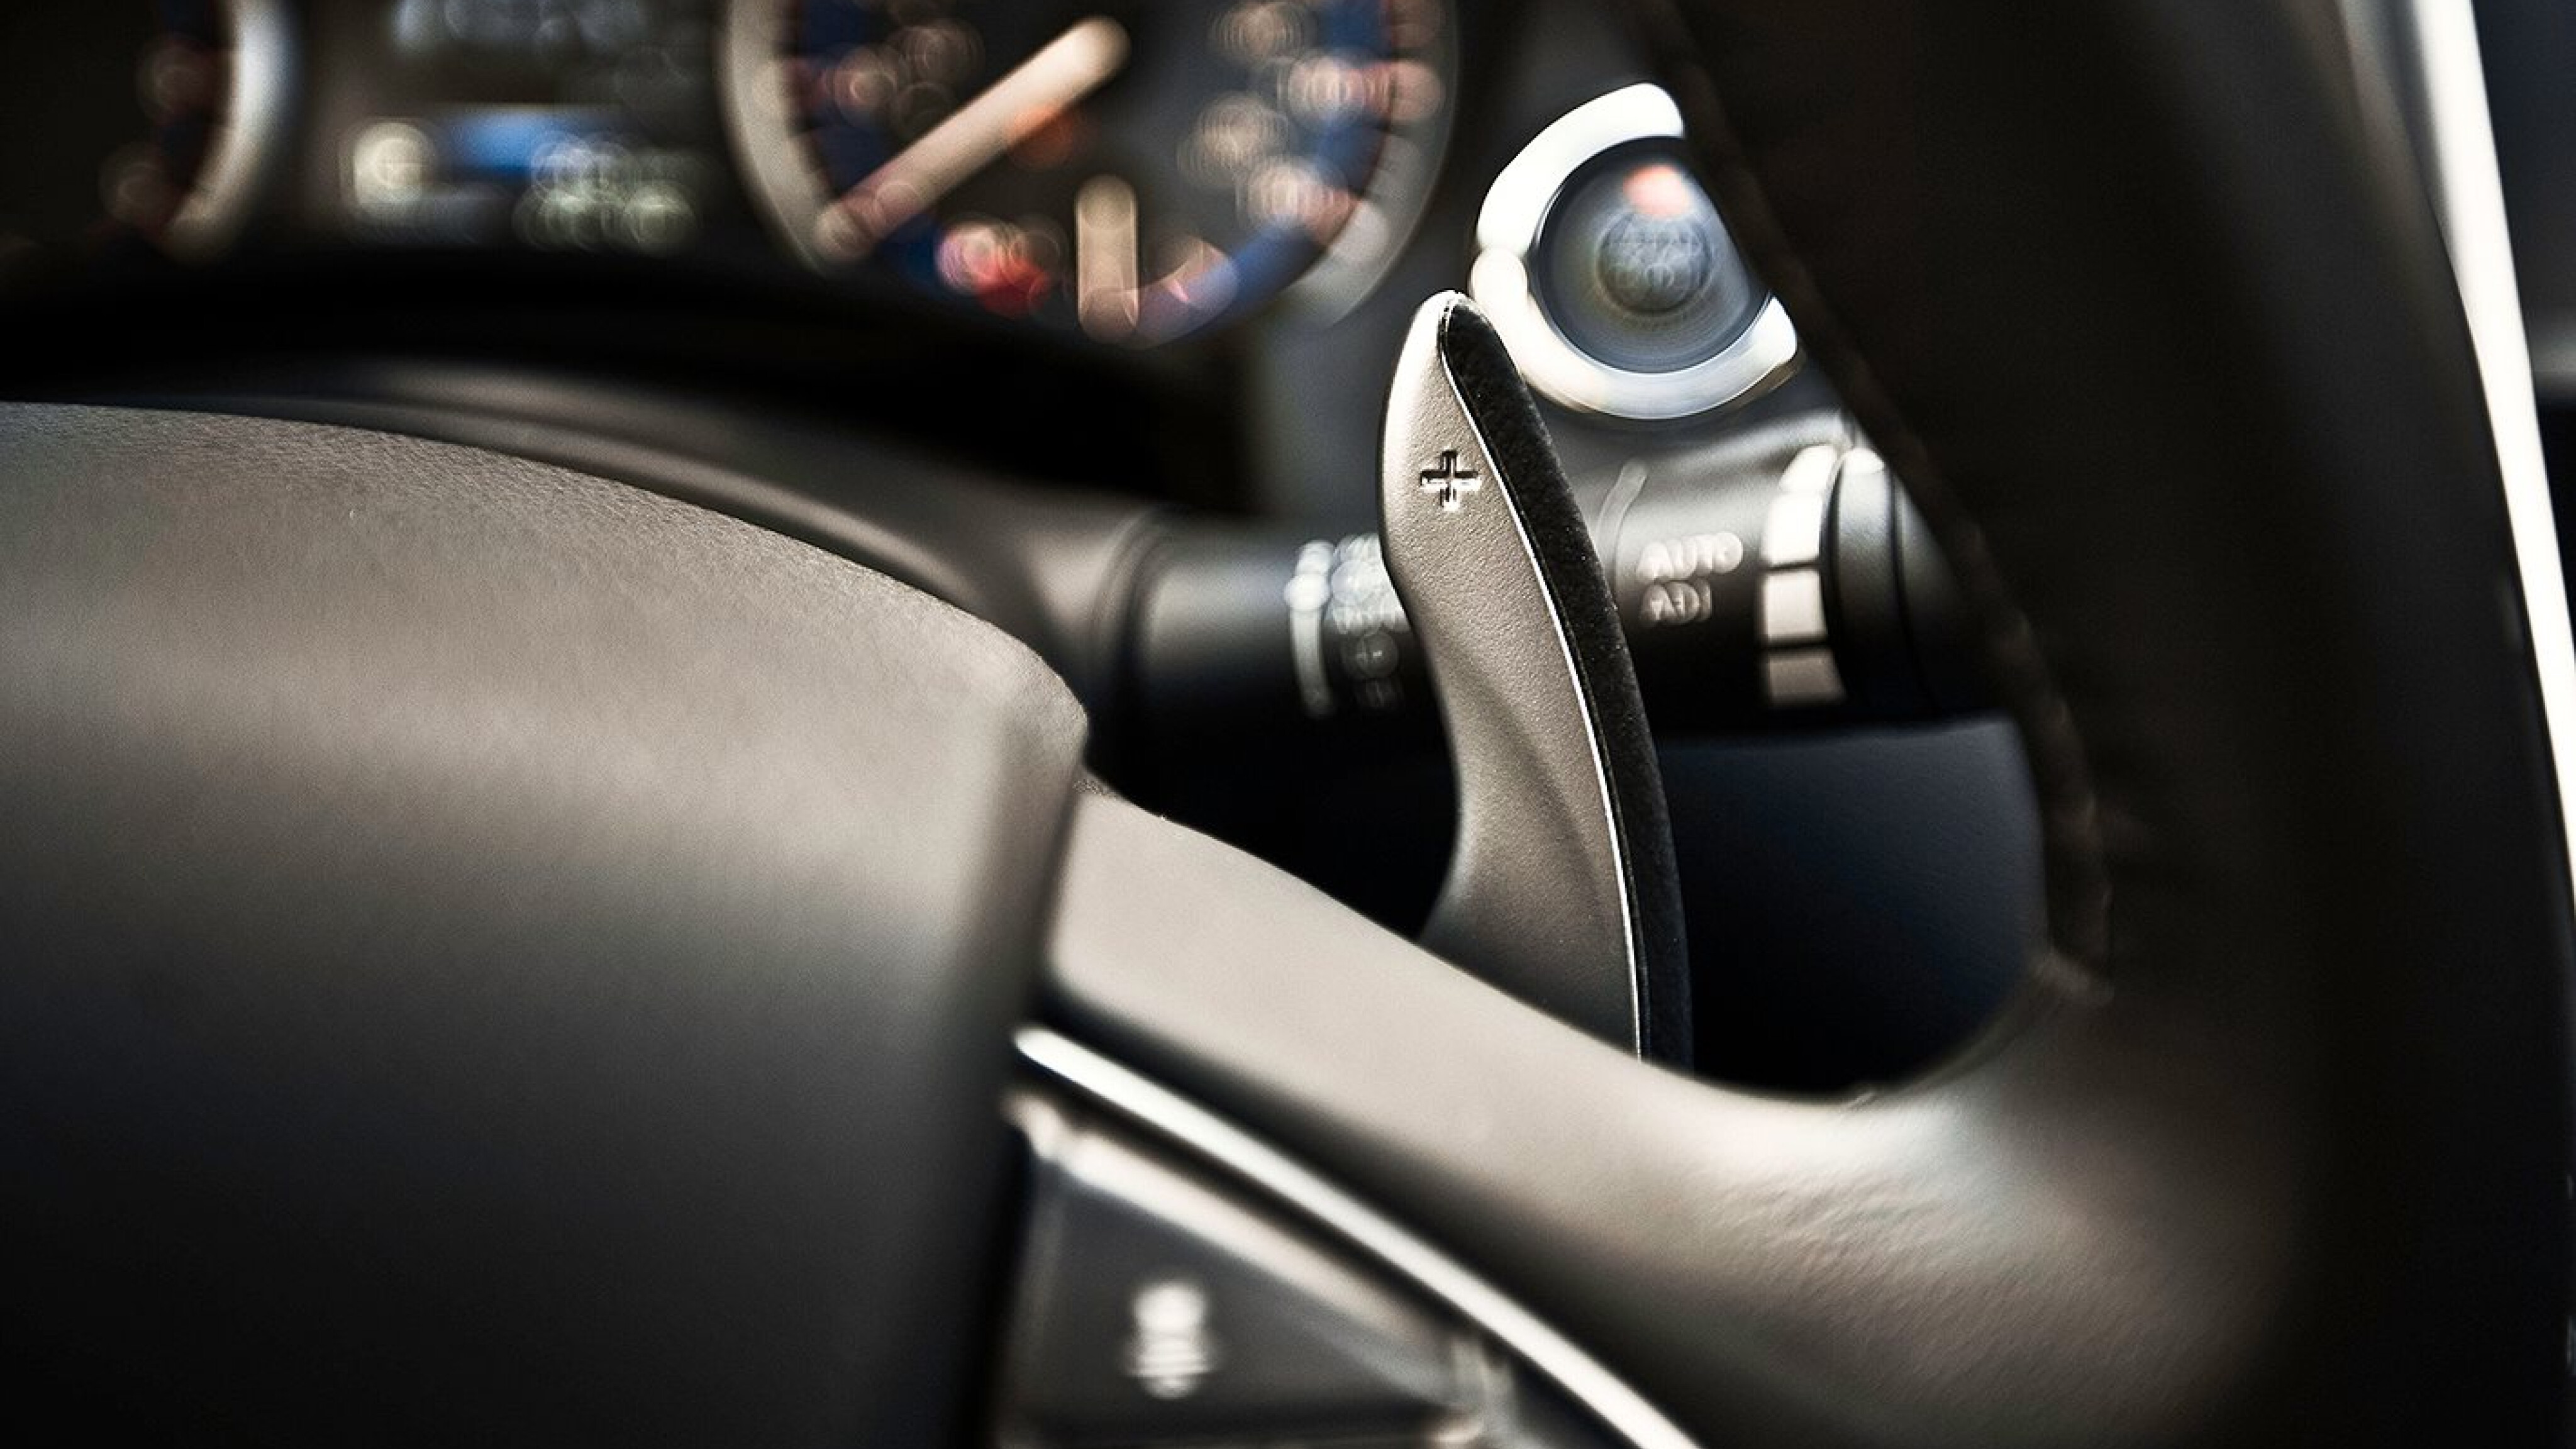 Top 5 Best Steering Wheel Knob 2022 